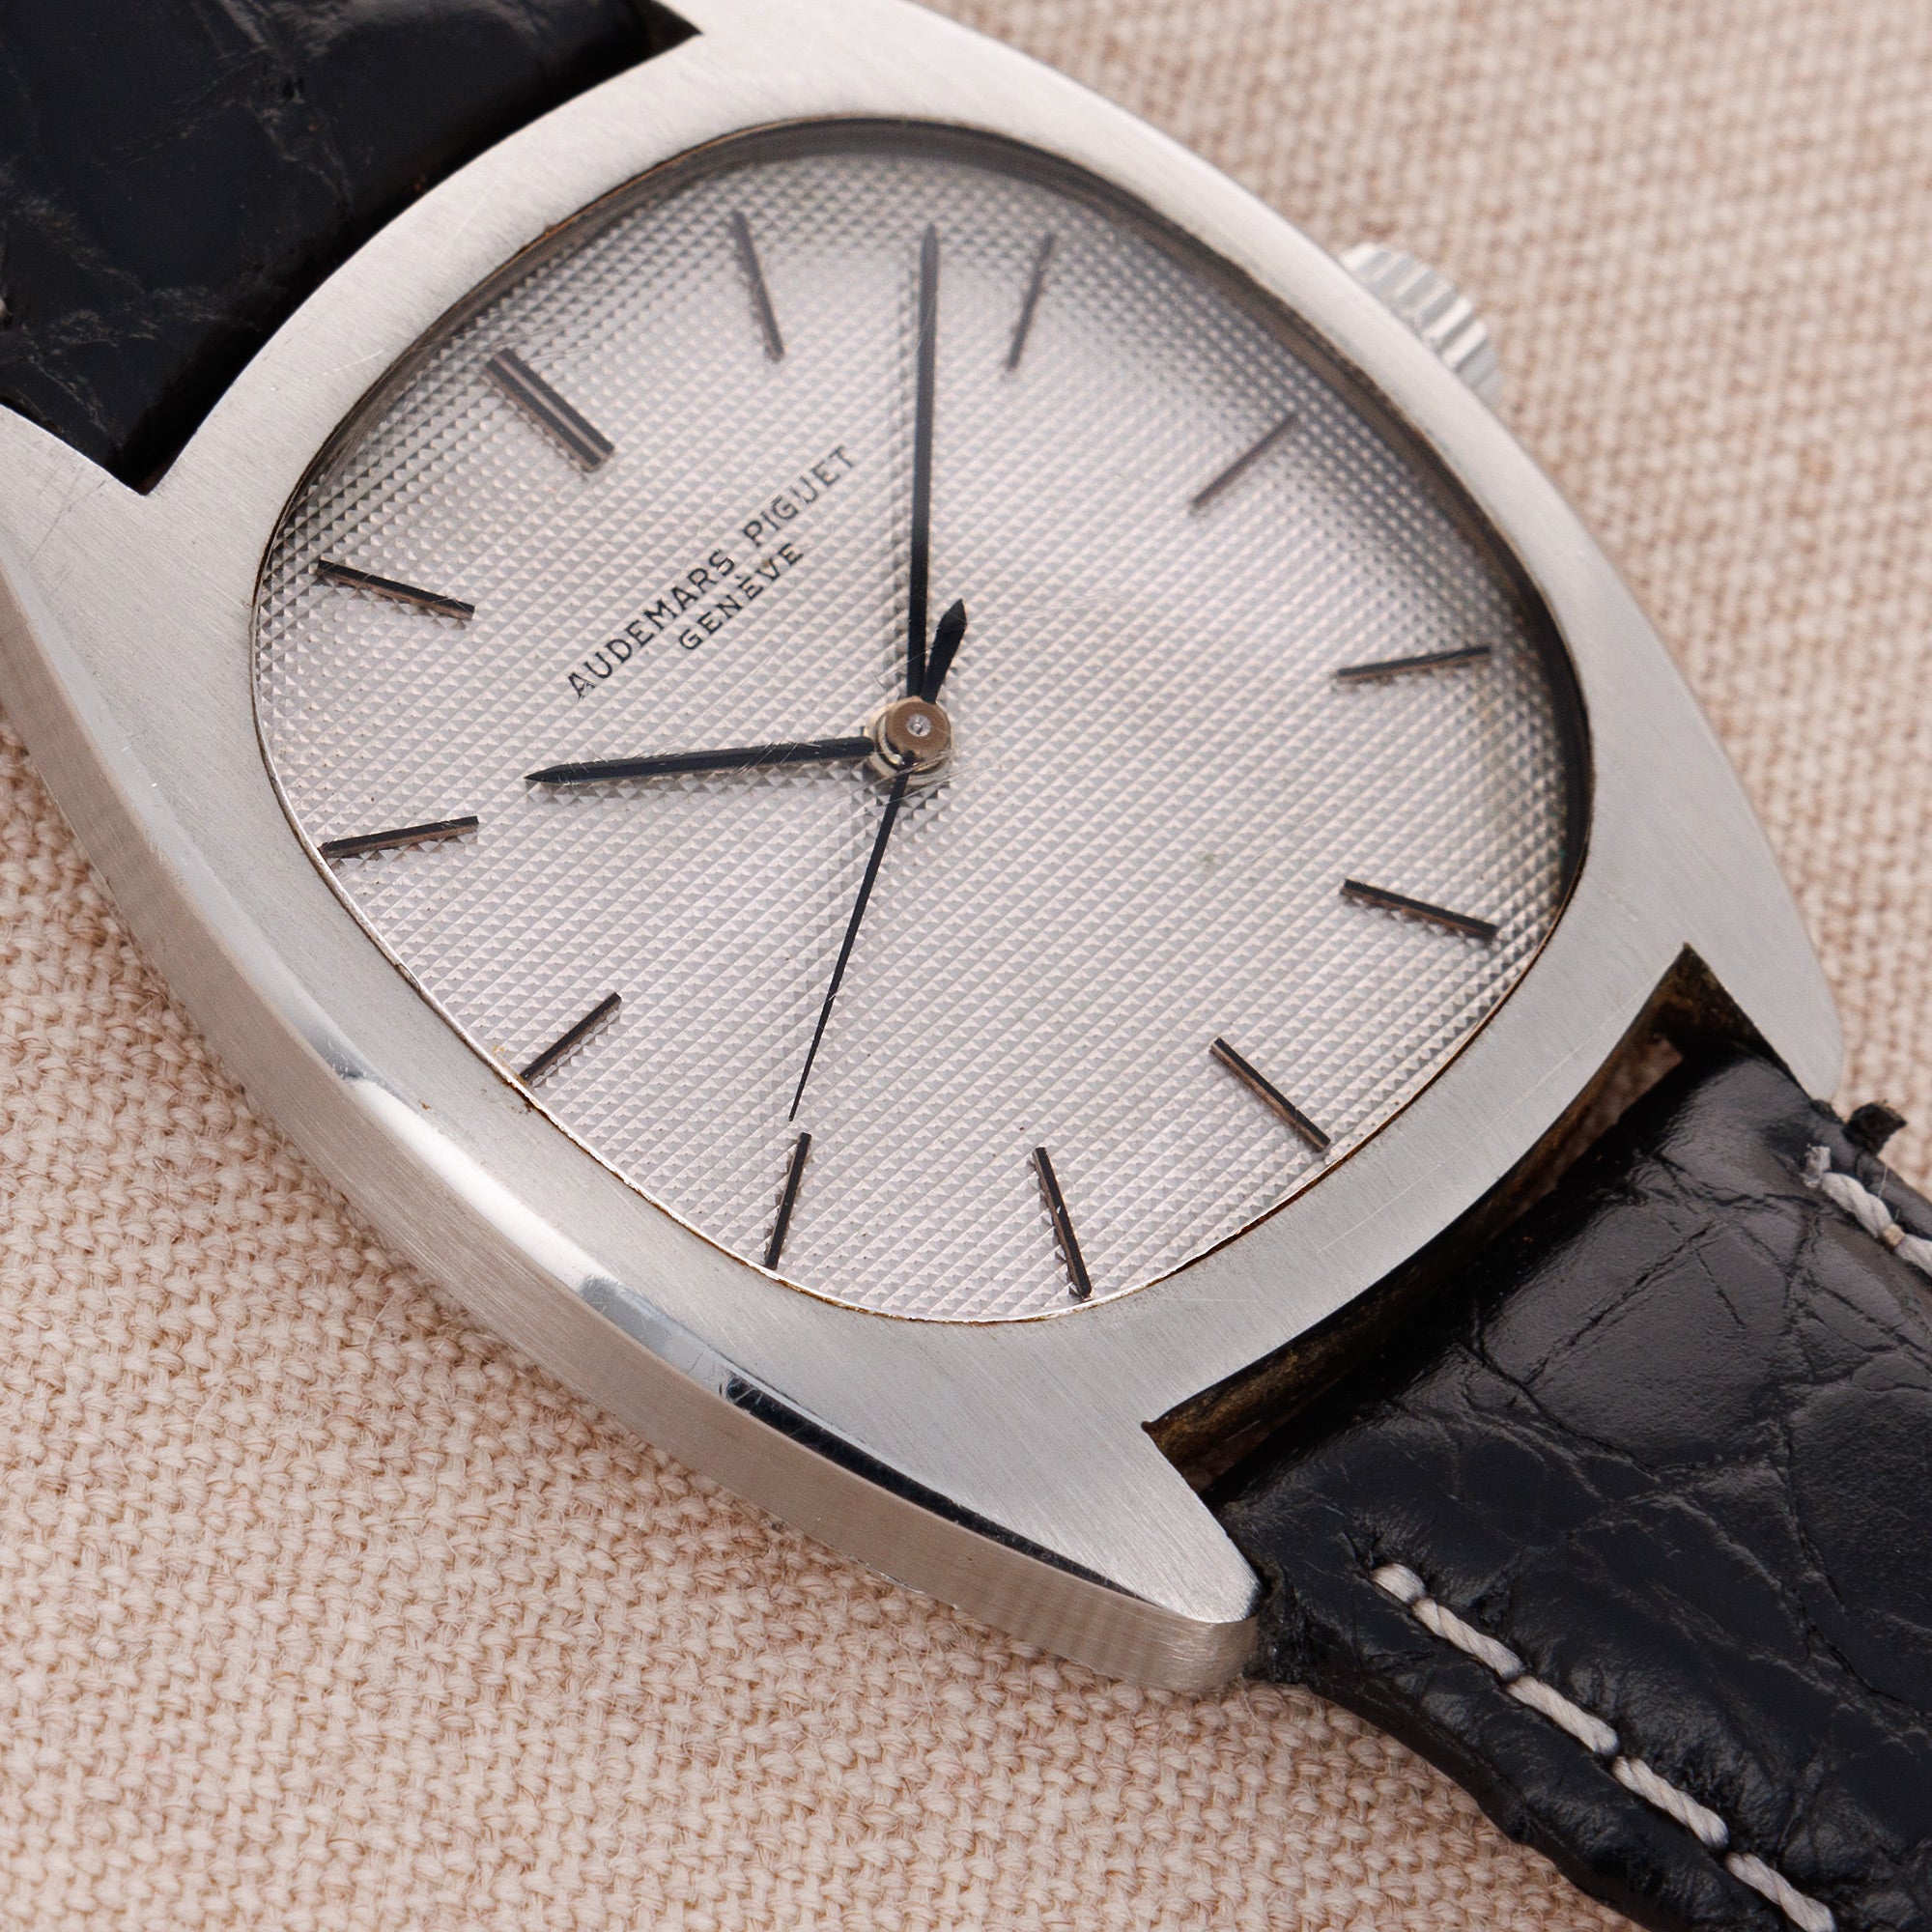 Audemars Piguet - Audemars Piguet Steel Tonneau Watch Ref. 5369 with Hobnail Dial - The Keystone Watches